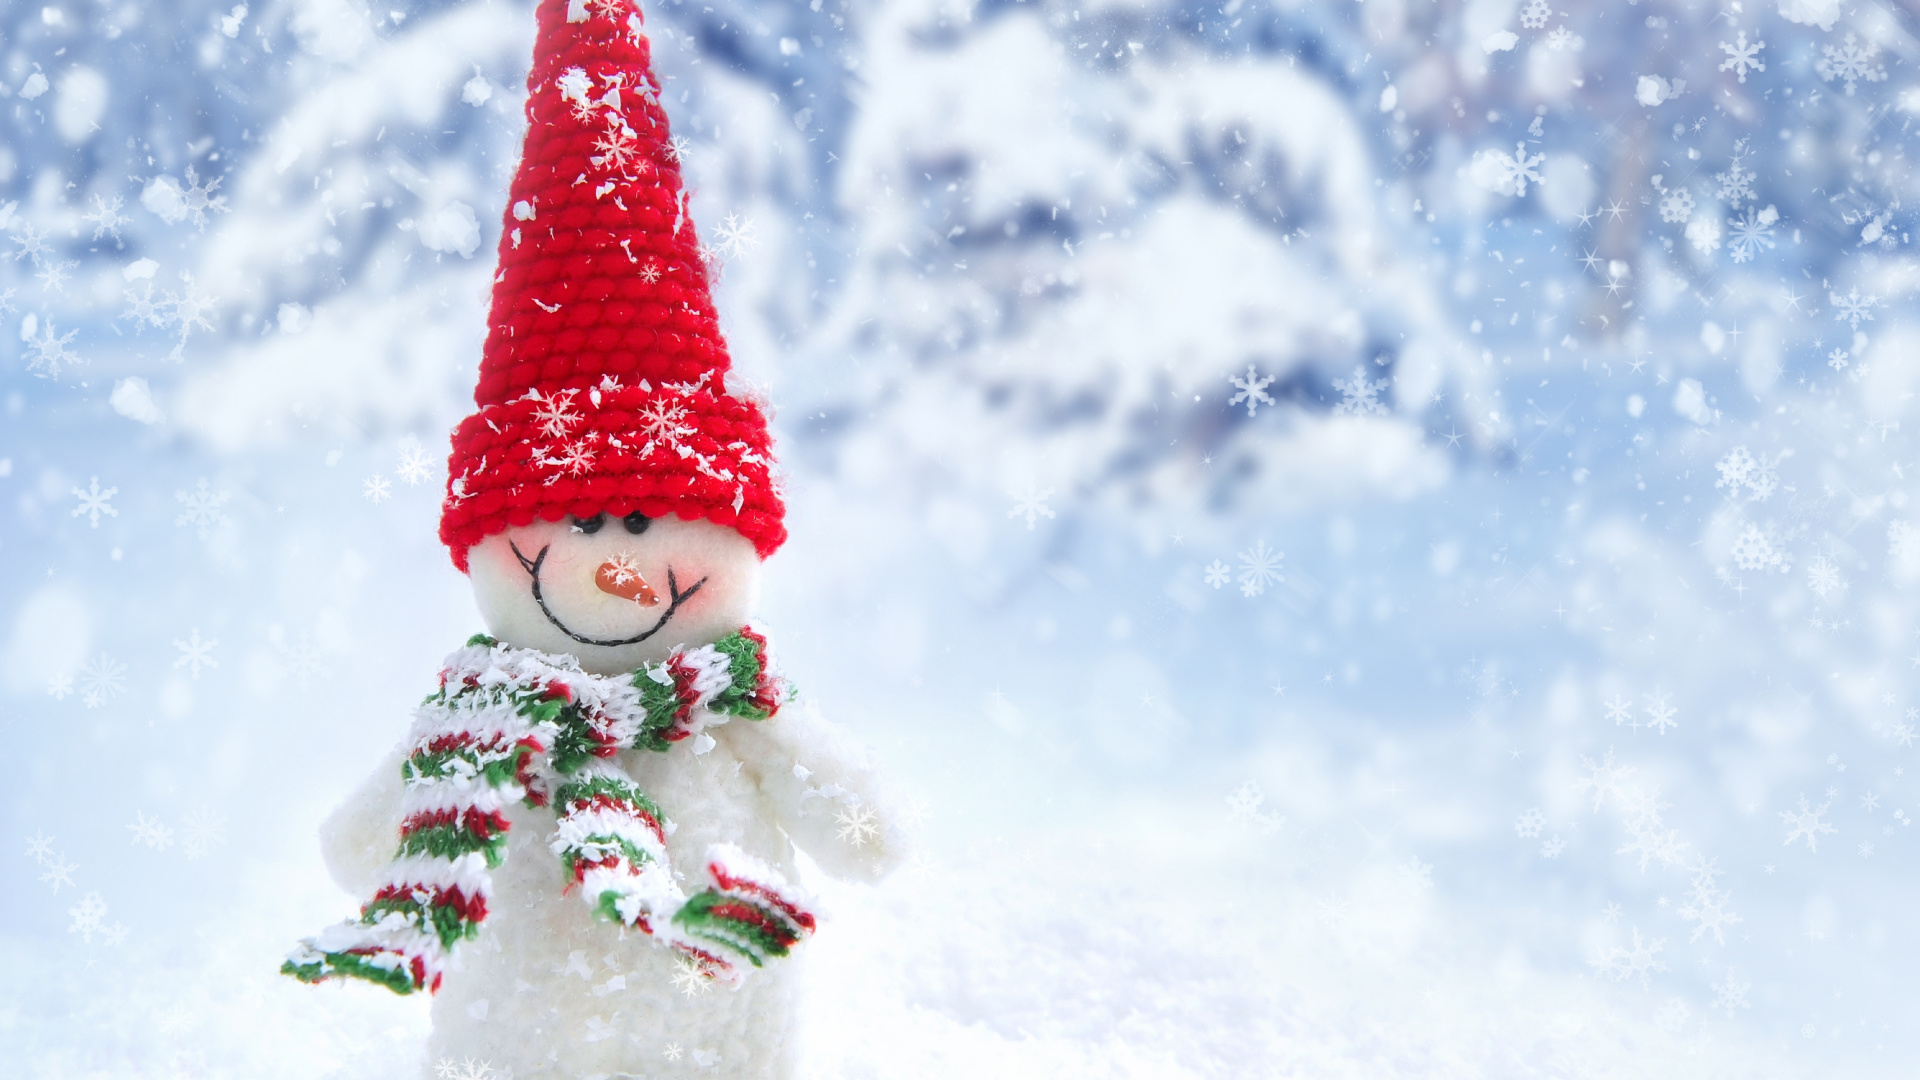 雪人, 冬天, 圣诞树, 圣诞节, 圣诞节的装饰品 壁纸 1920x1080 允许